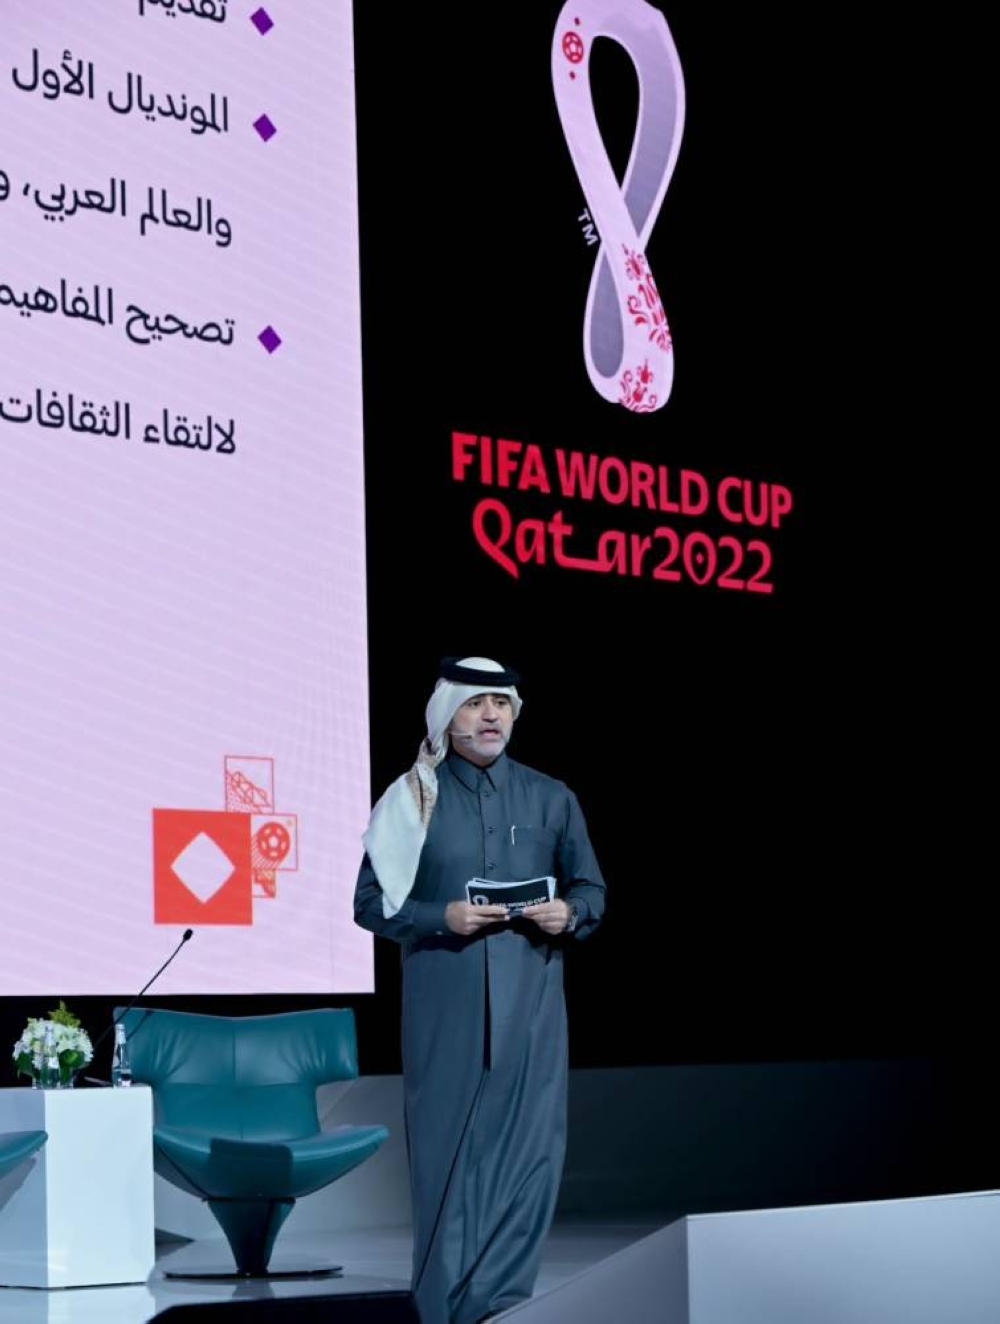 قطر 2022 إنجاز لكل العرب